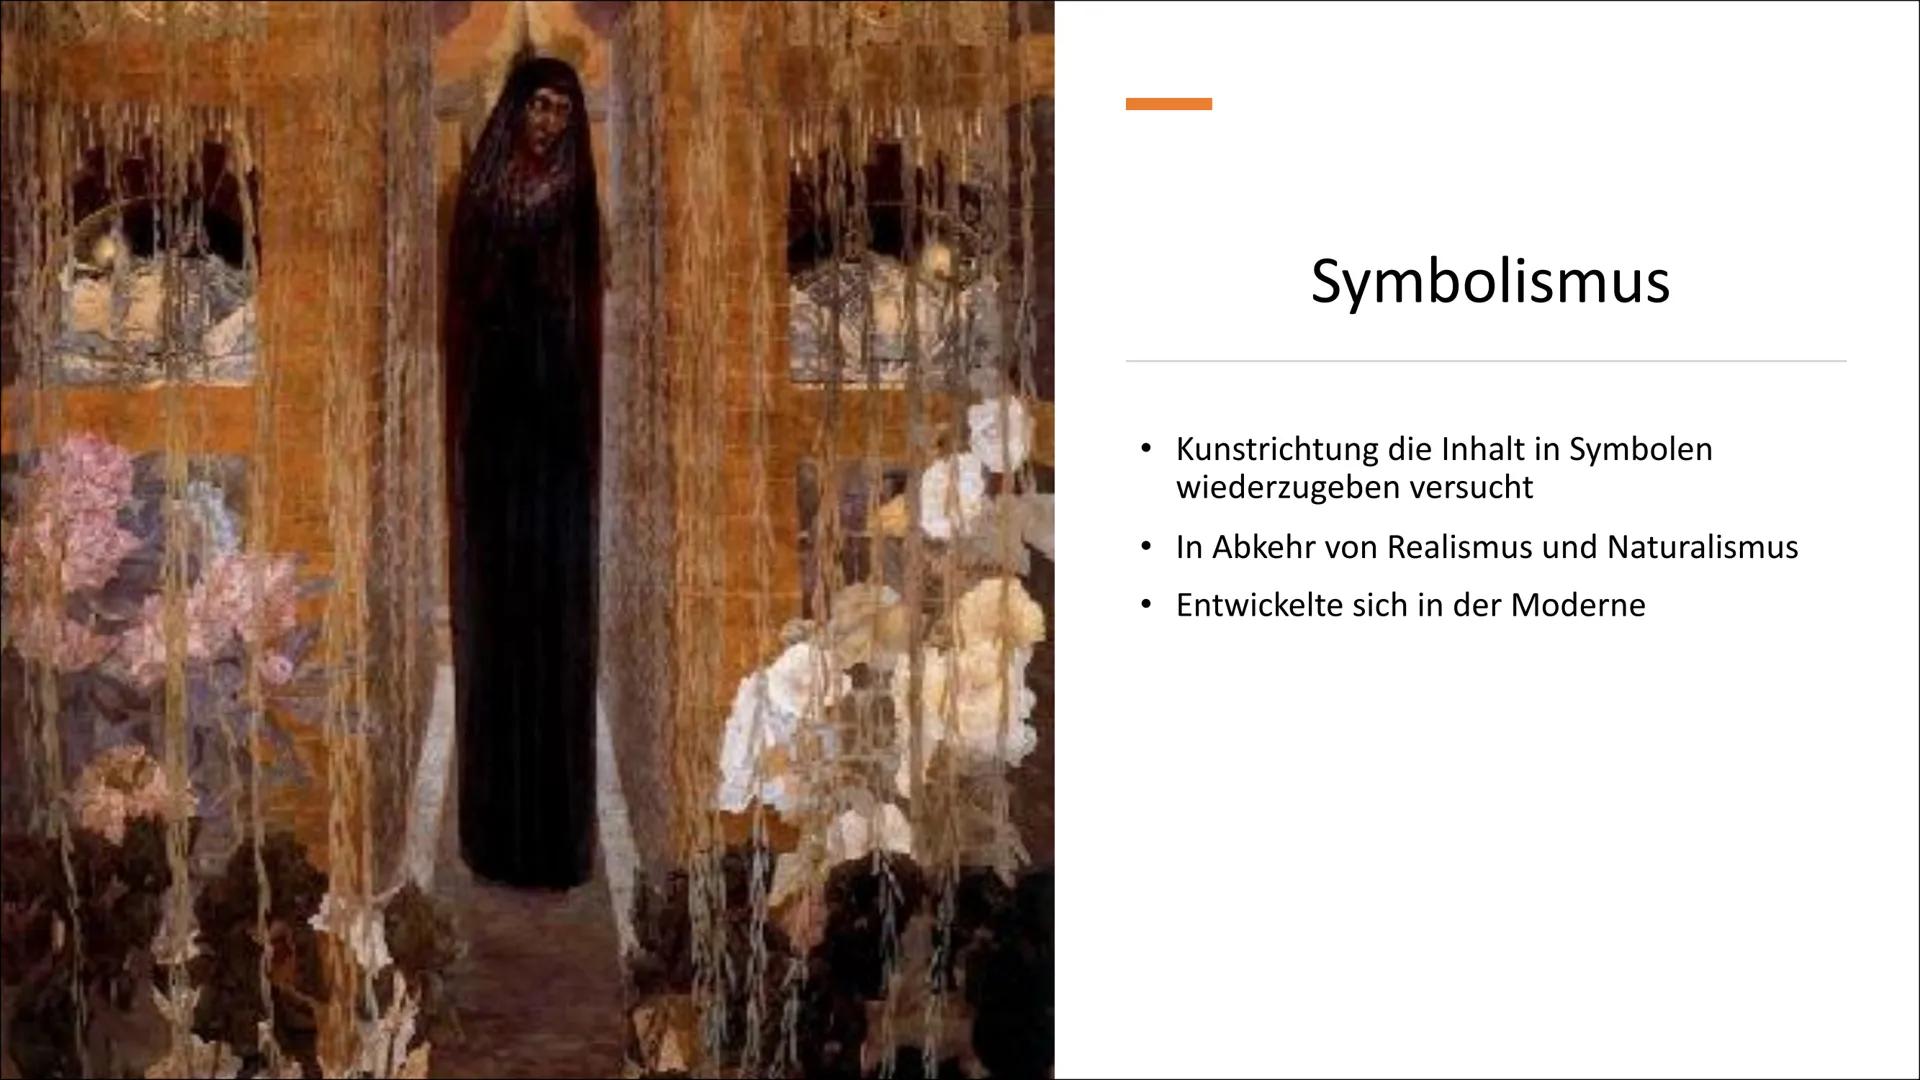 Symbolismus und
Expressionismus مستسلمهمه
Definition:
Kunstrichtung die Inhalt in Symbolen wiederzugeben versucht.
Abkehr von Realismus und 